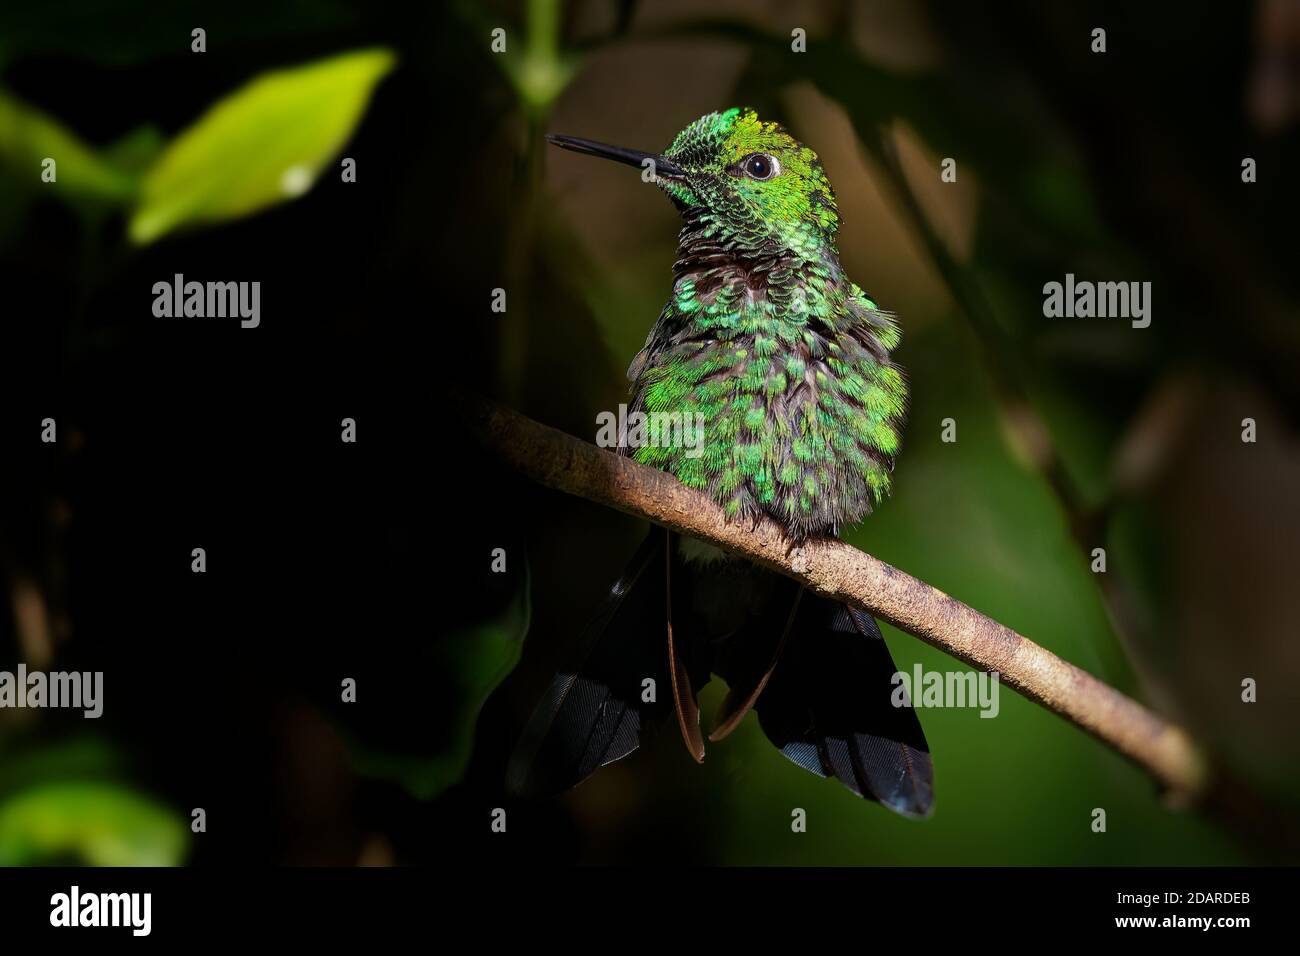 À couronne verte brillante - Heliodoxa jacula grand et robuste qui est un résident de hummingbird source dans les hautes terres du Costa Rica à l'ouest de l'Équateur. Banque D'Images